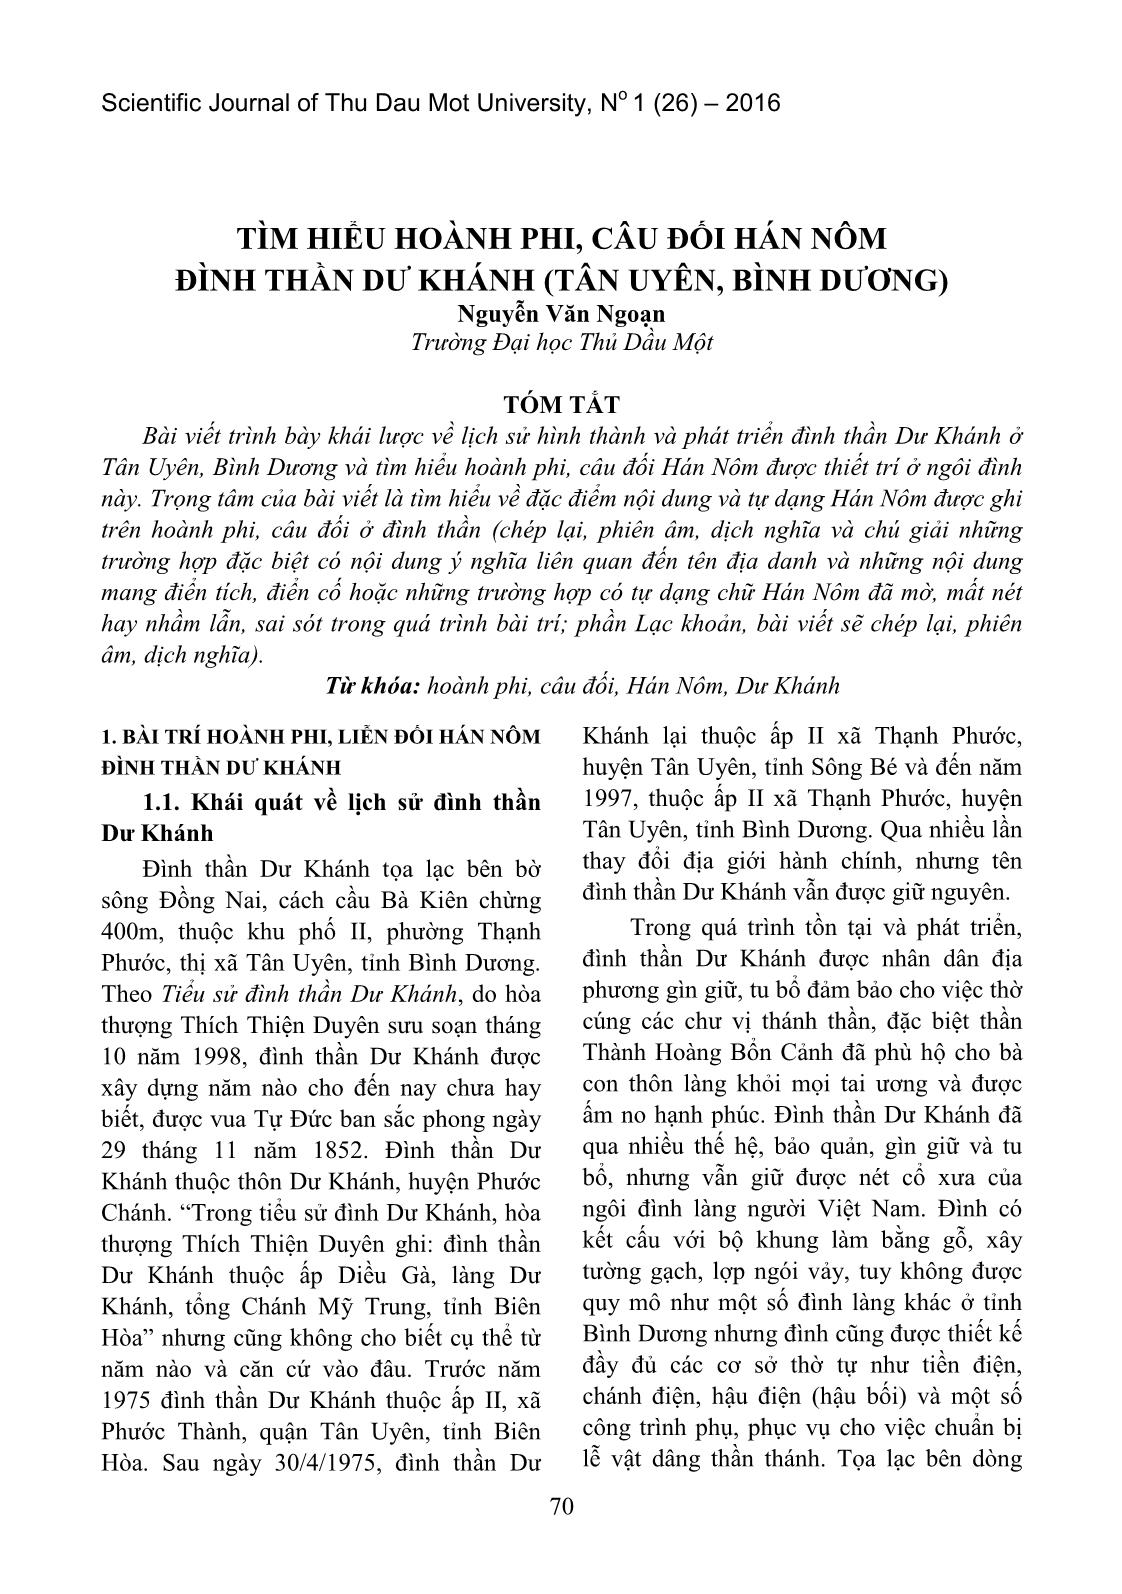 Tìm hiểu hoành phi, câu đối Hán Nôm đình thần dư khánh (Tân Uyên, Bình Dương) trang 1